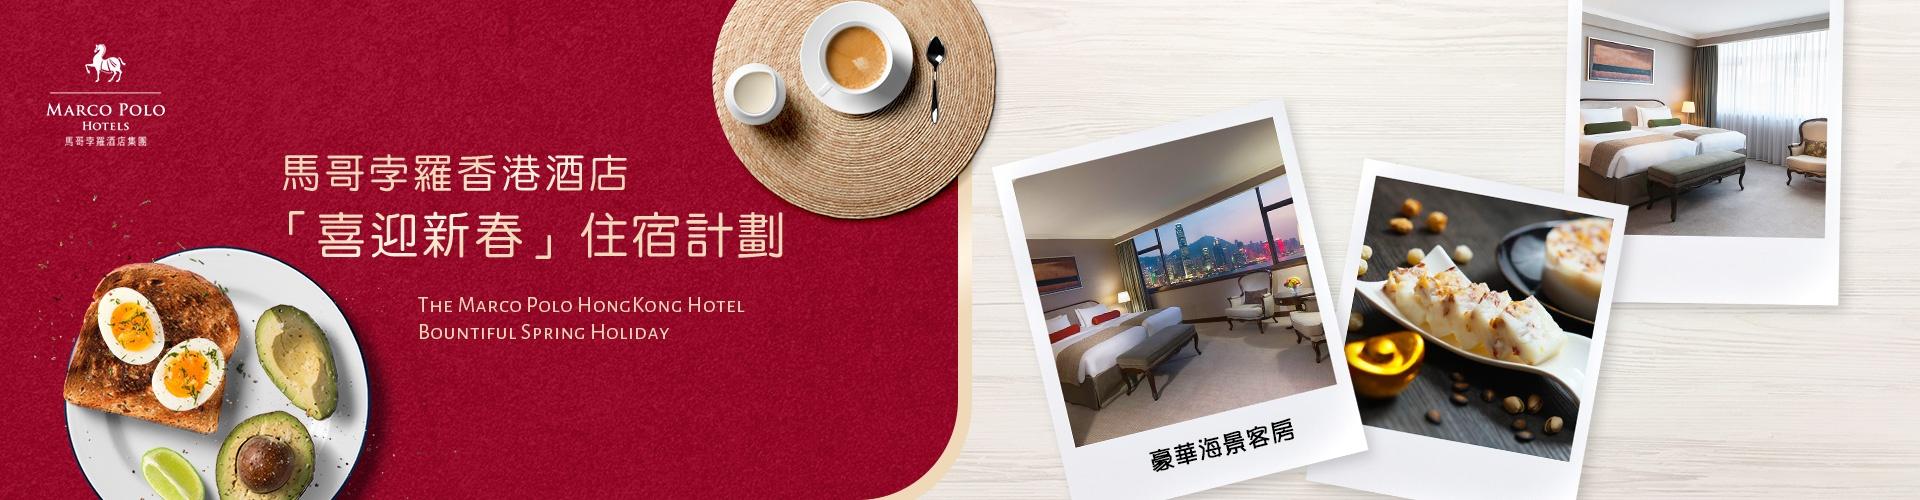 馬哥孛羅香港酒店「喜迎新春」住宿計劃